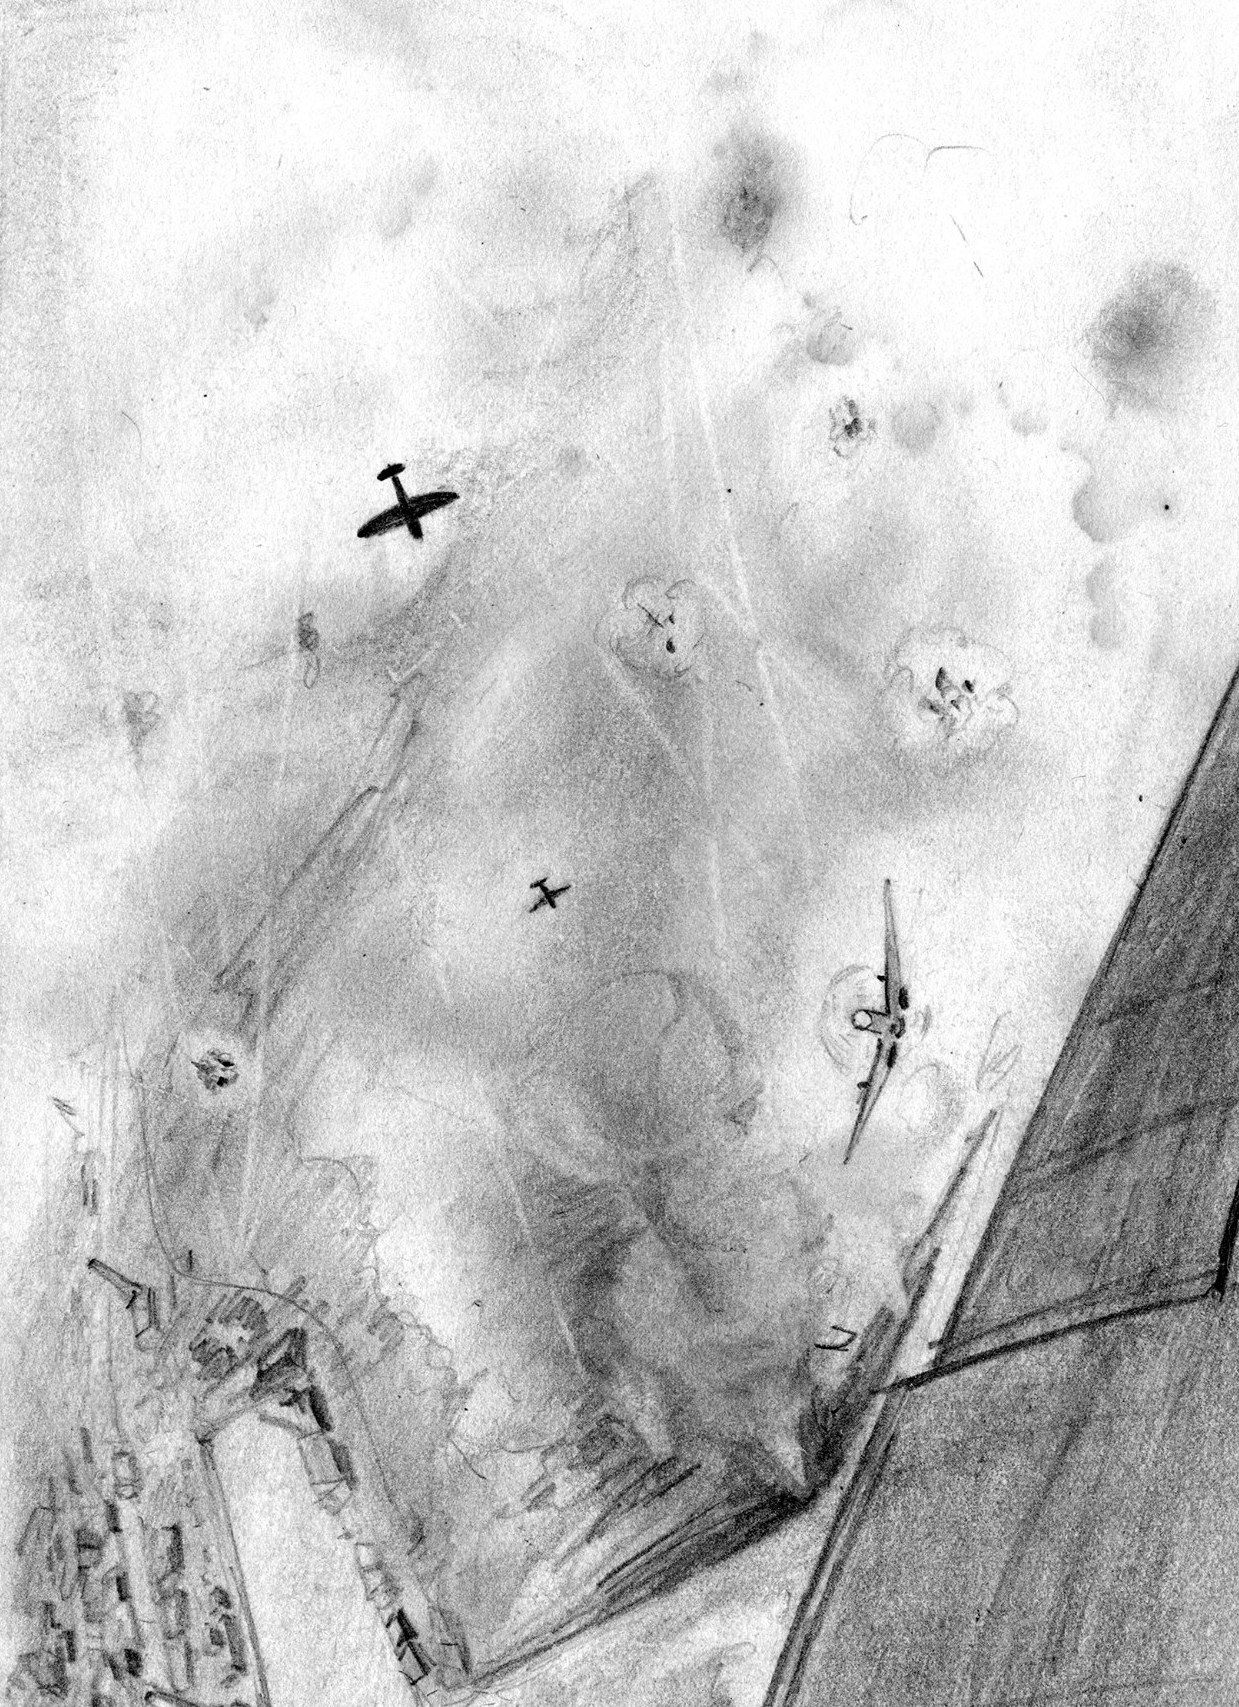 W czasie bitwy nad Gandawą polscy piloci mocno przetrzepali skórę Niemcom. Zestrzelili na pewno 18,5 samolotów Luftwaffe, 1 prawdopodobne oraz uszkodzili 5 kolejnych.